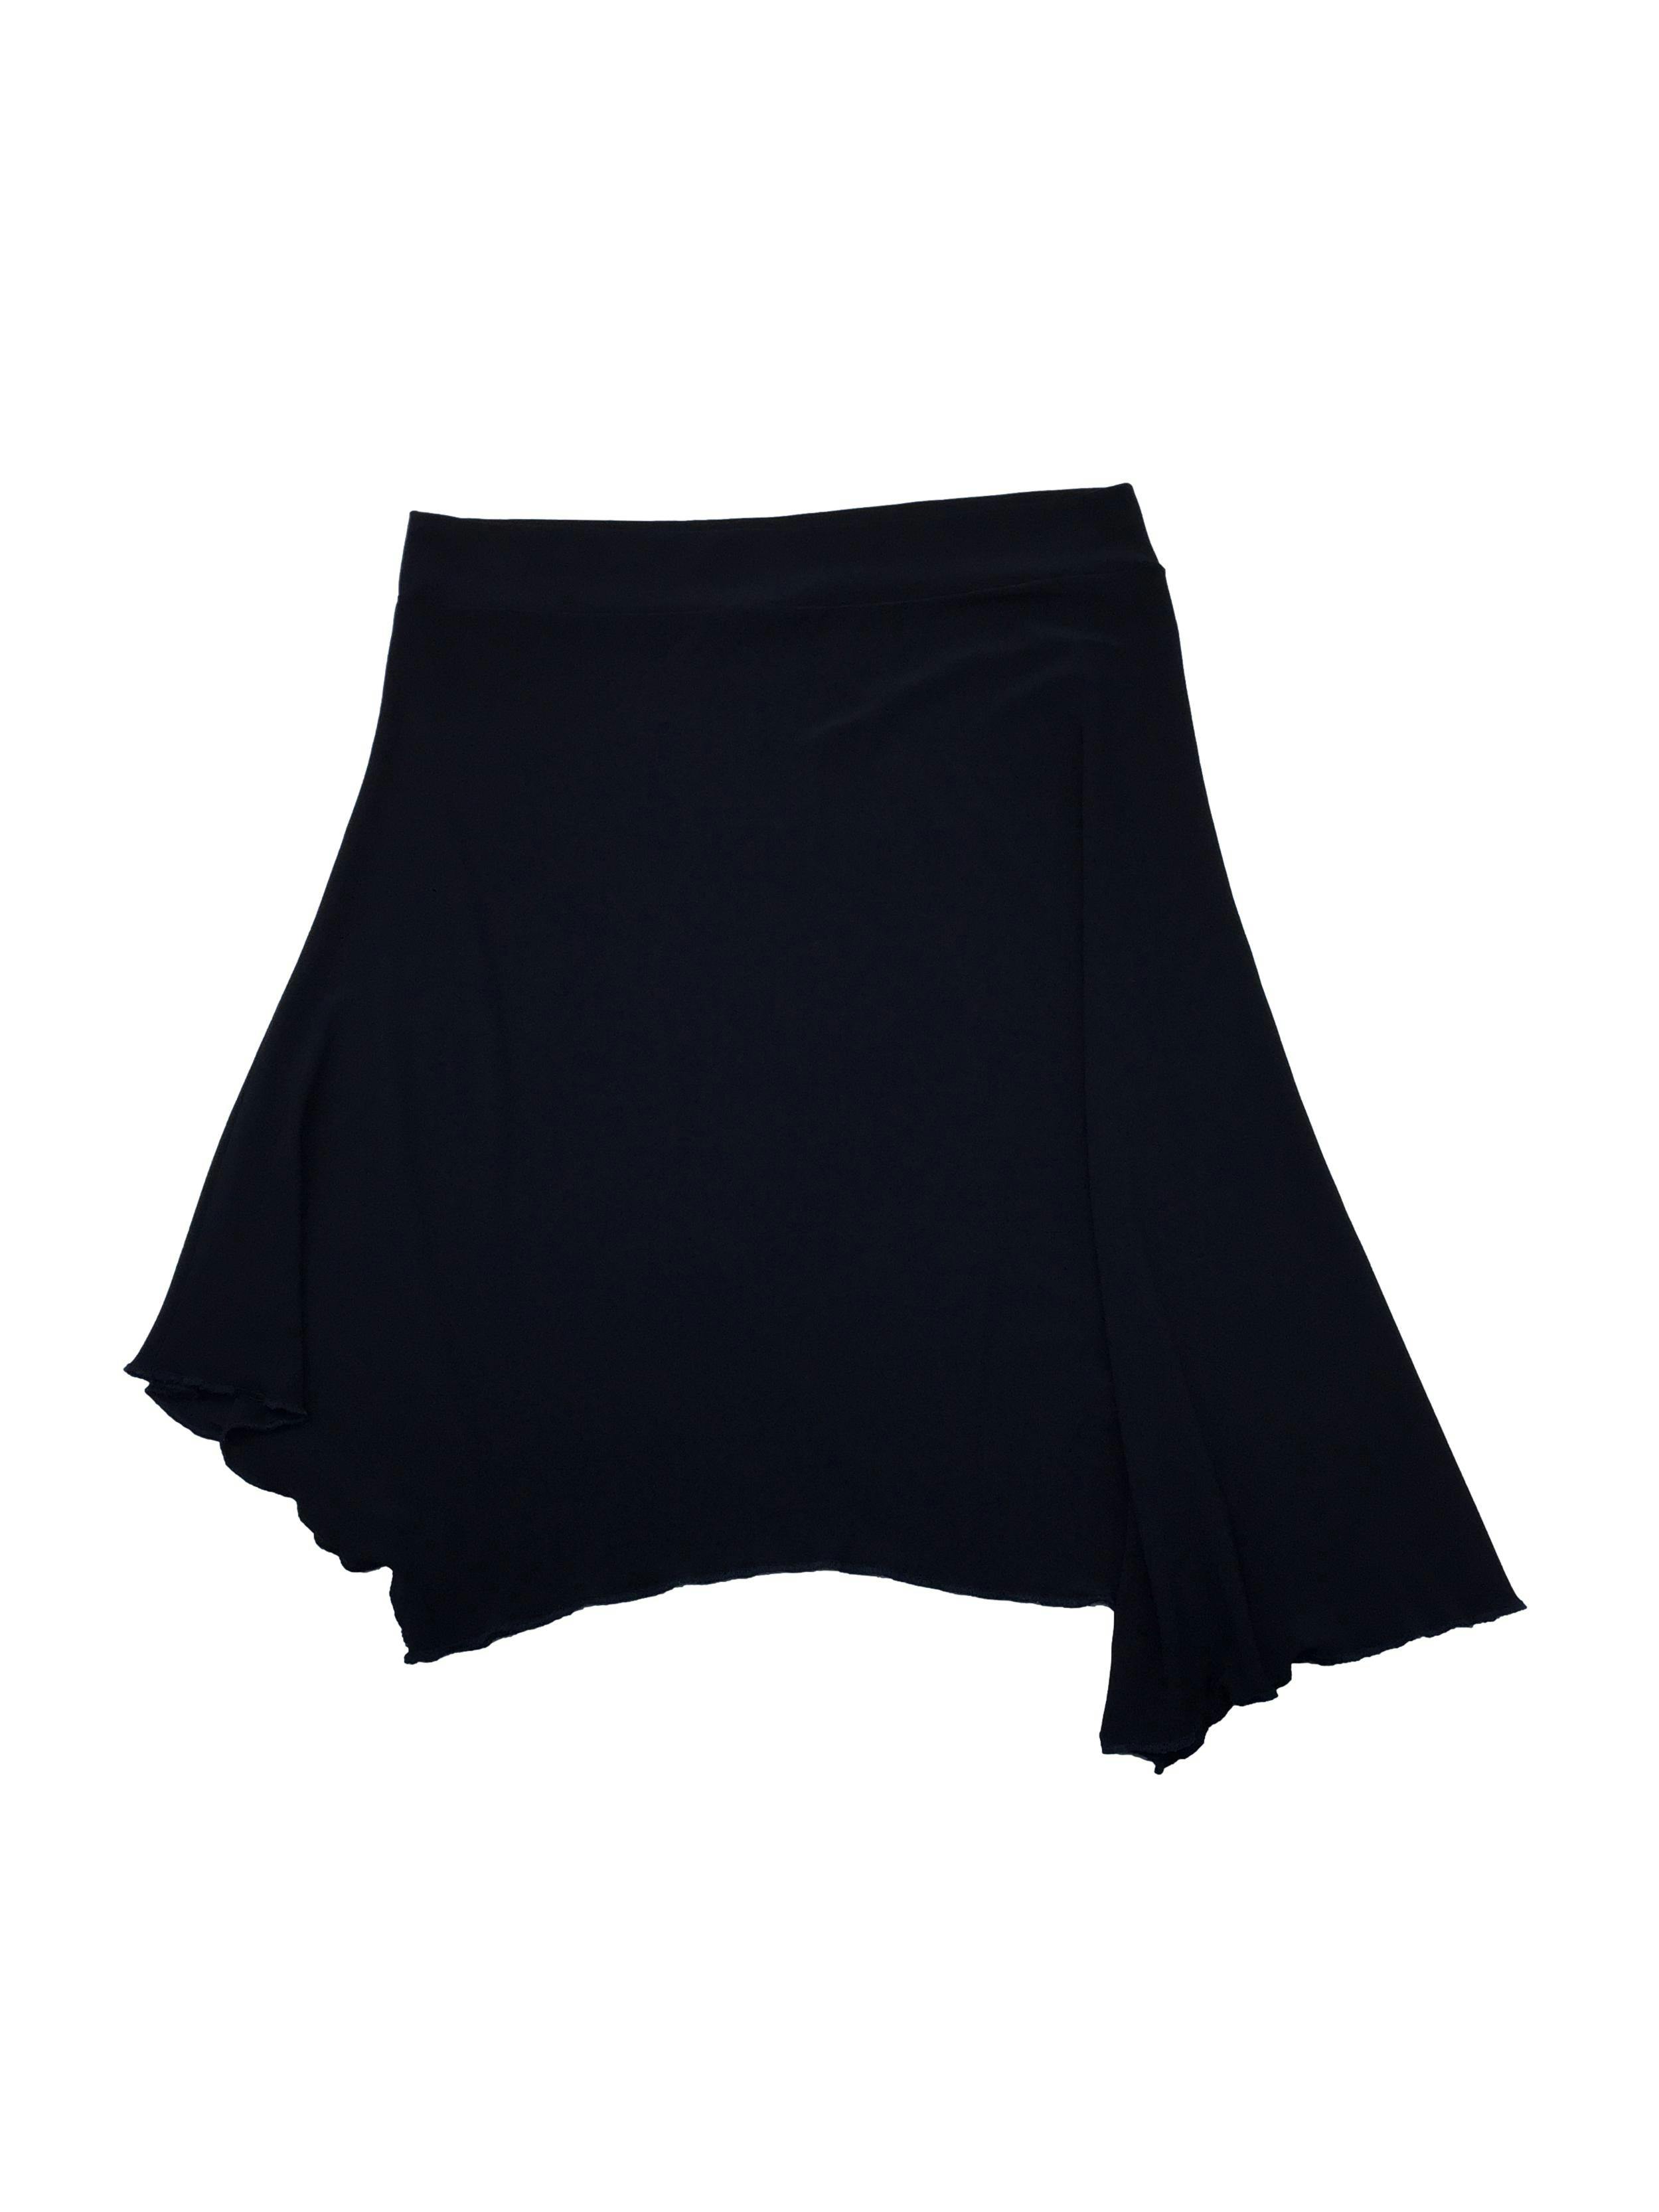 Falda negra de tela stretch, bajo asimétrico con acabado lechuga. Cintura 72cm sin estirar, Largo 58cm.